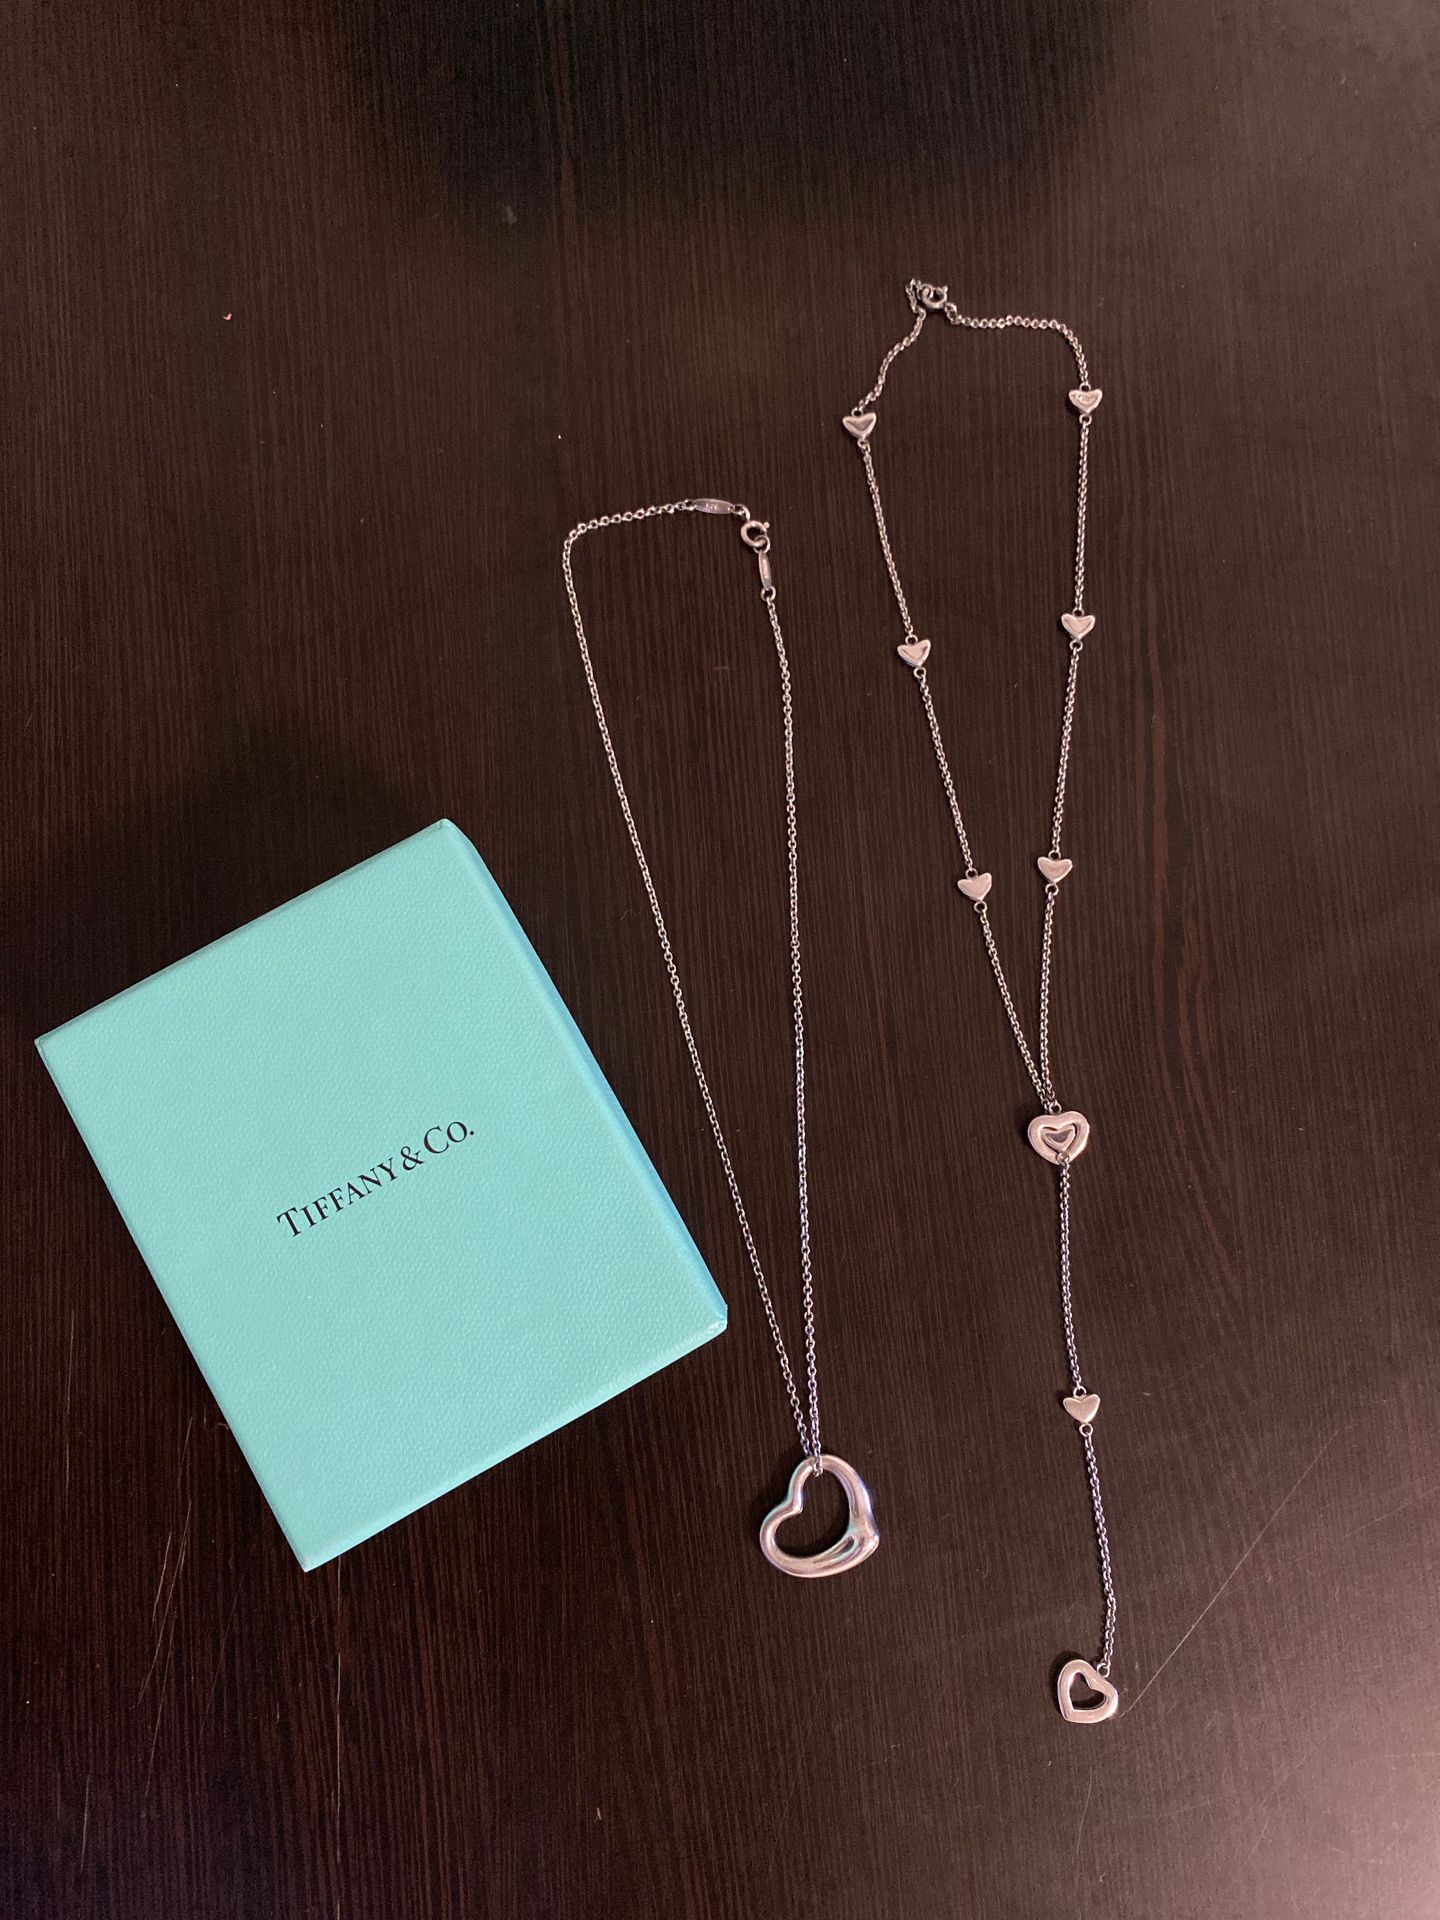 Tiffany’s necklaces